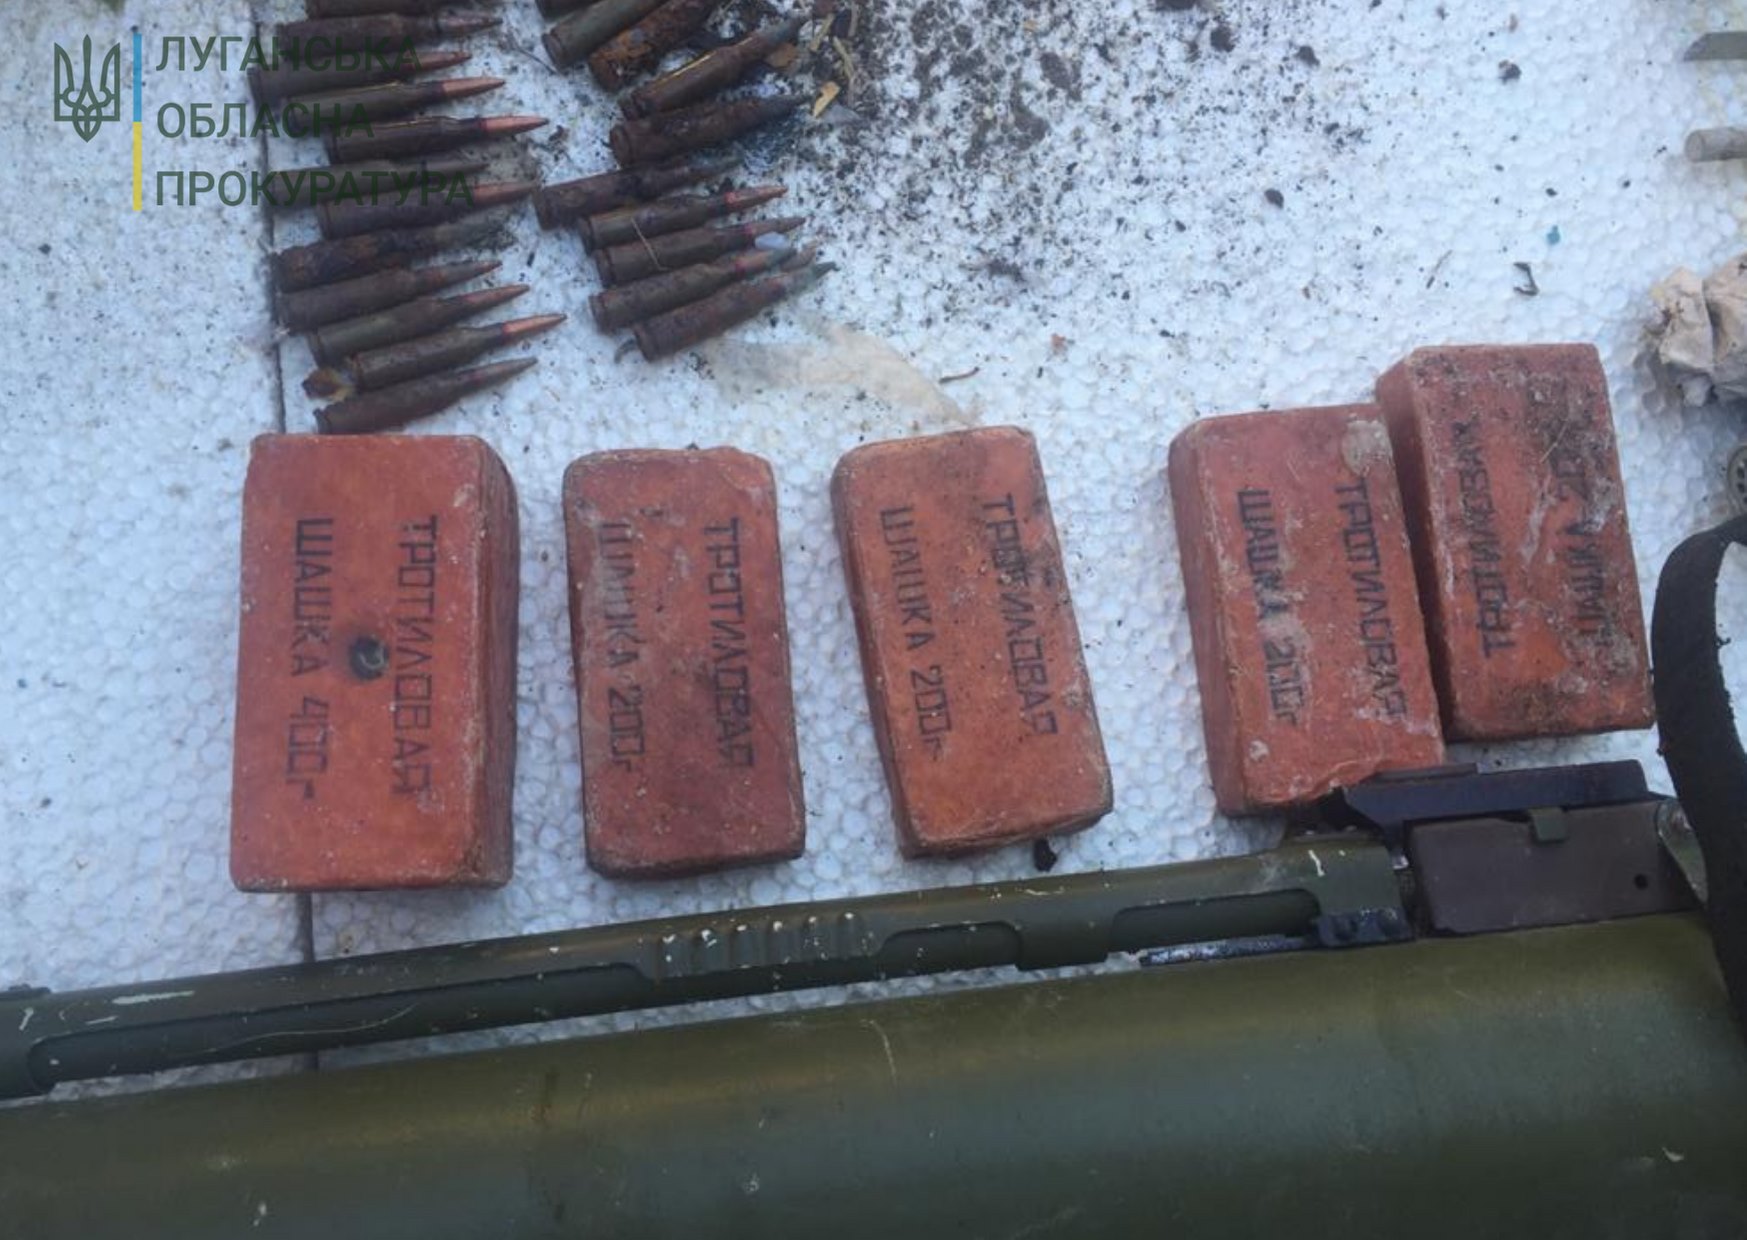 Опасная находка в Северодонецке: обнаружен схрон с боеприпасами и взрывчаткой